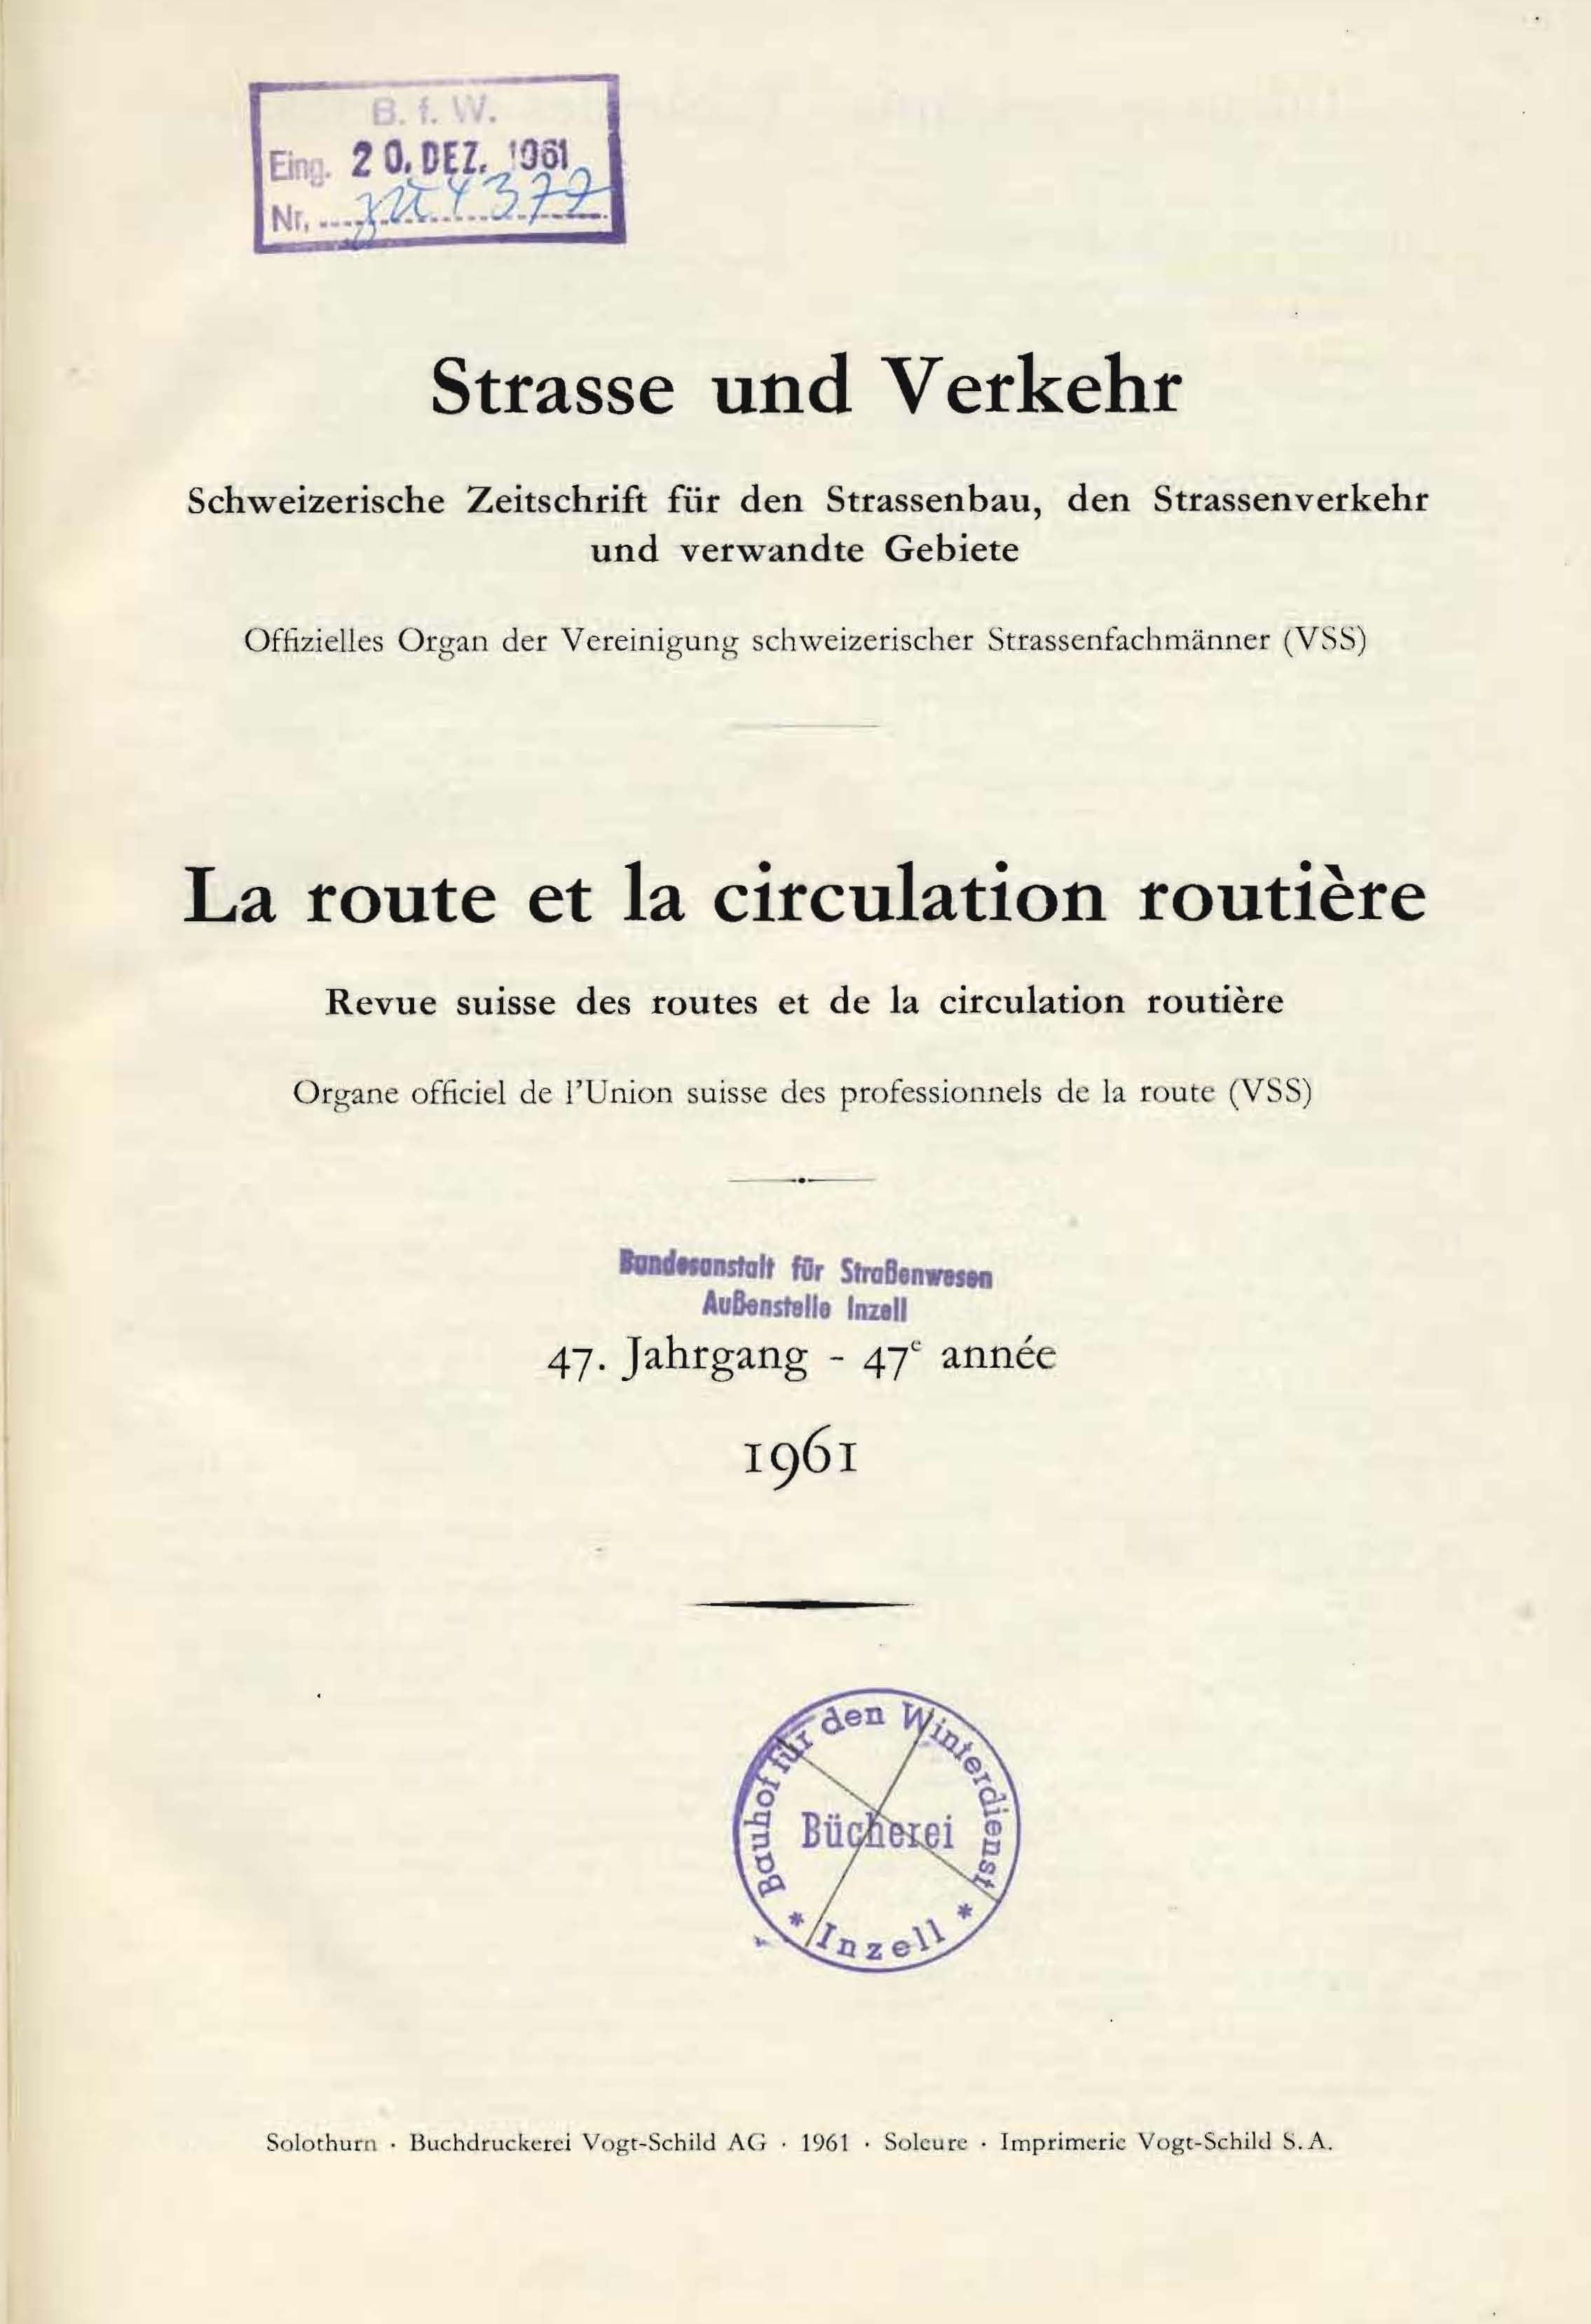 Strasse und Verkehr, 47. Jahrgang 1961